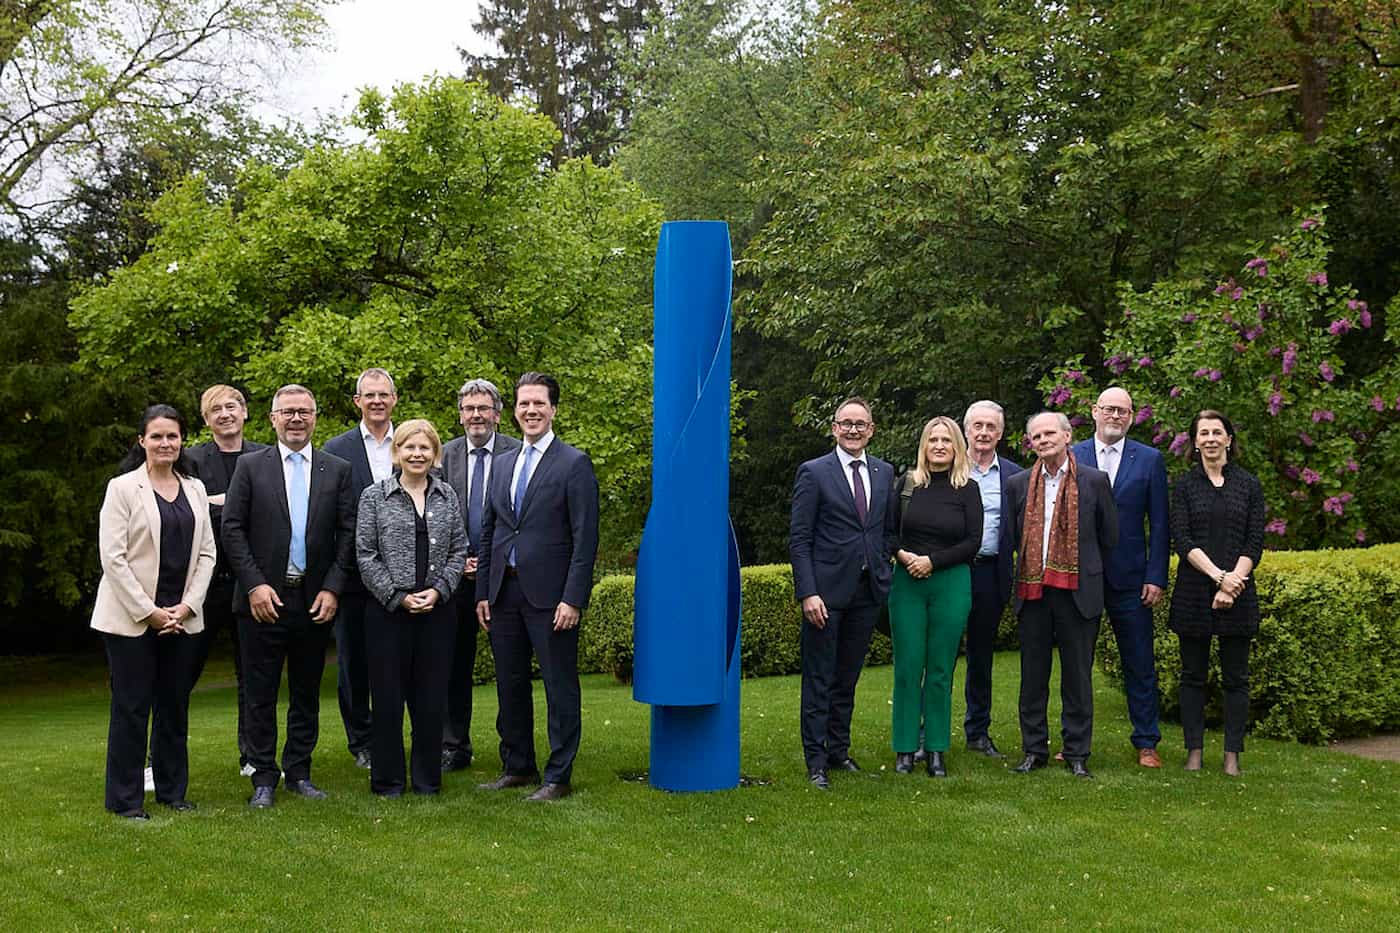 Regierungsrat Manuel Frick mit weiteren Gästen bei der Einweihung der Skulptur "Pilage C65" von Gottfried Honegger im Garten der Liechtensteinischen Botschaft in Bern. (Quelle: Andreas von Gunten)